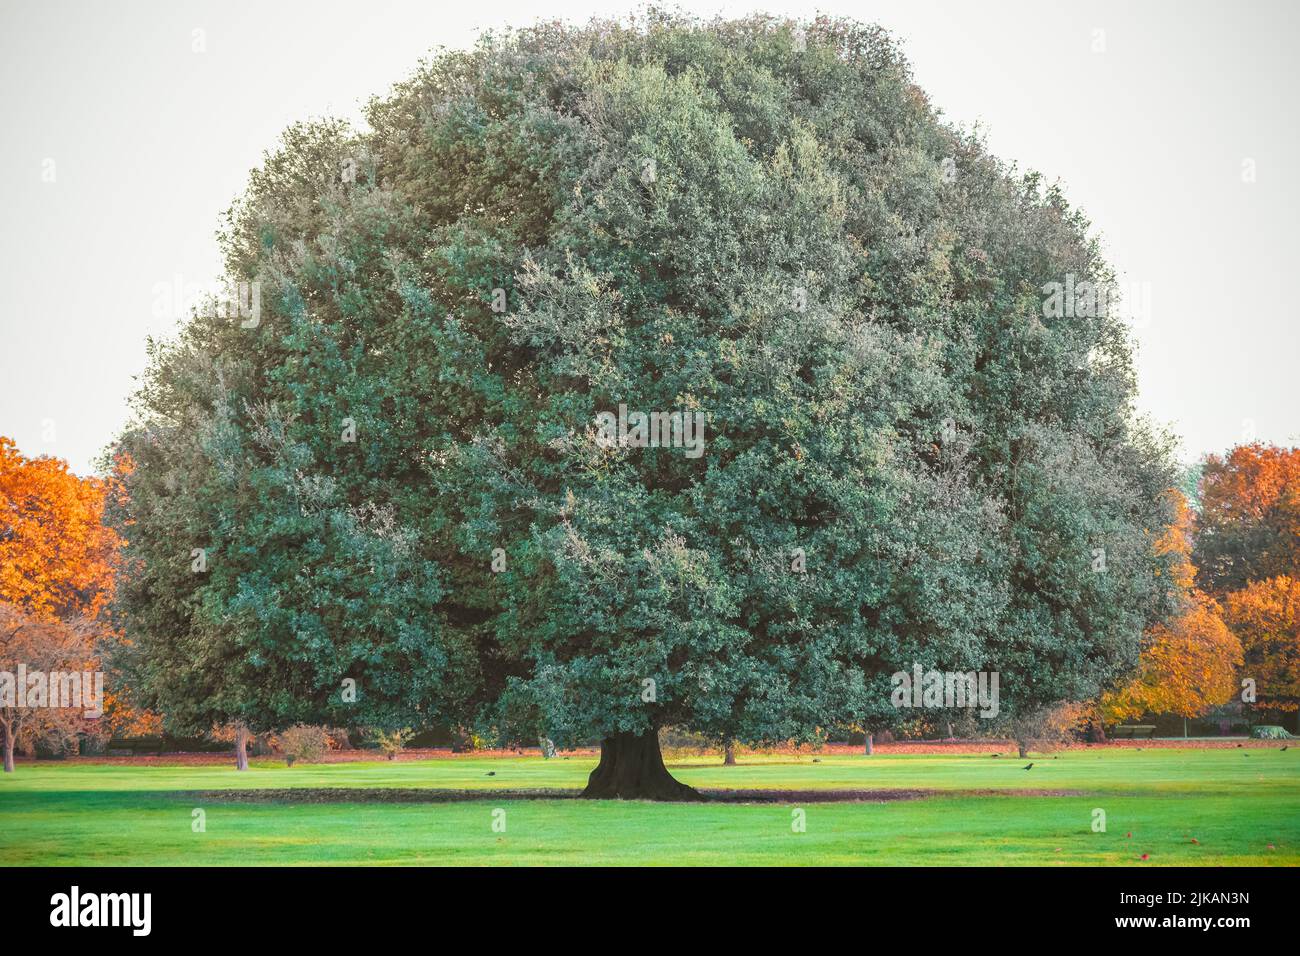 Big oak tree in Greenwich park, London, England Stock Photo